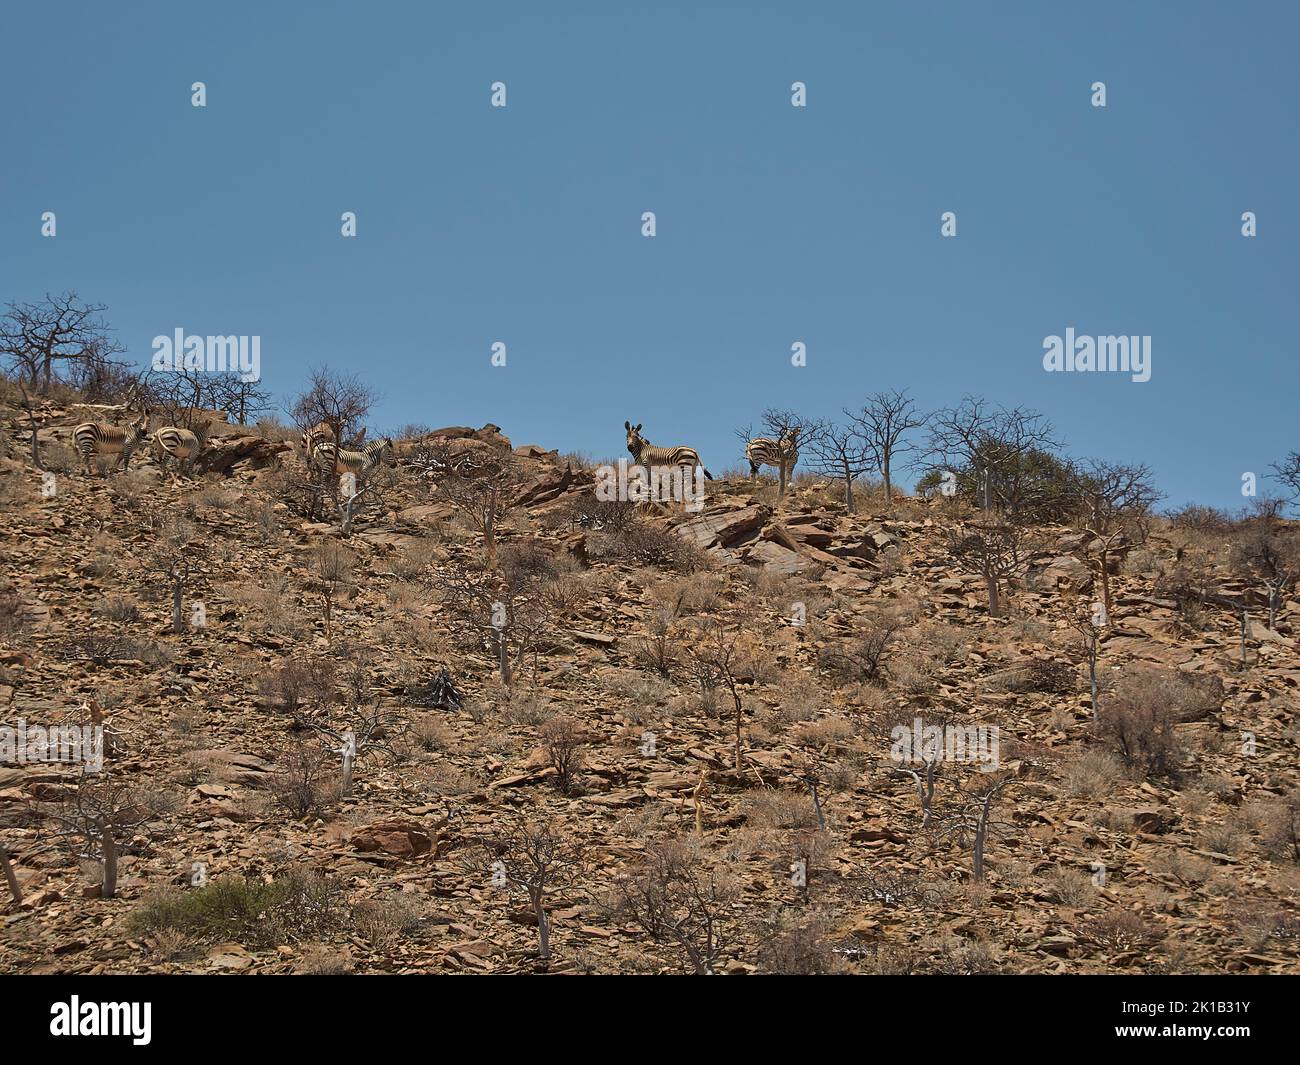 Hartmanns Mountain Zebra debout sur la crête d'une montagne rocheuse dans la région aride de la côte de Skeleton dans le Kaokoveld Namibie Banque D'Images